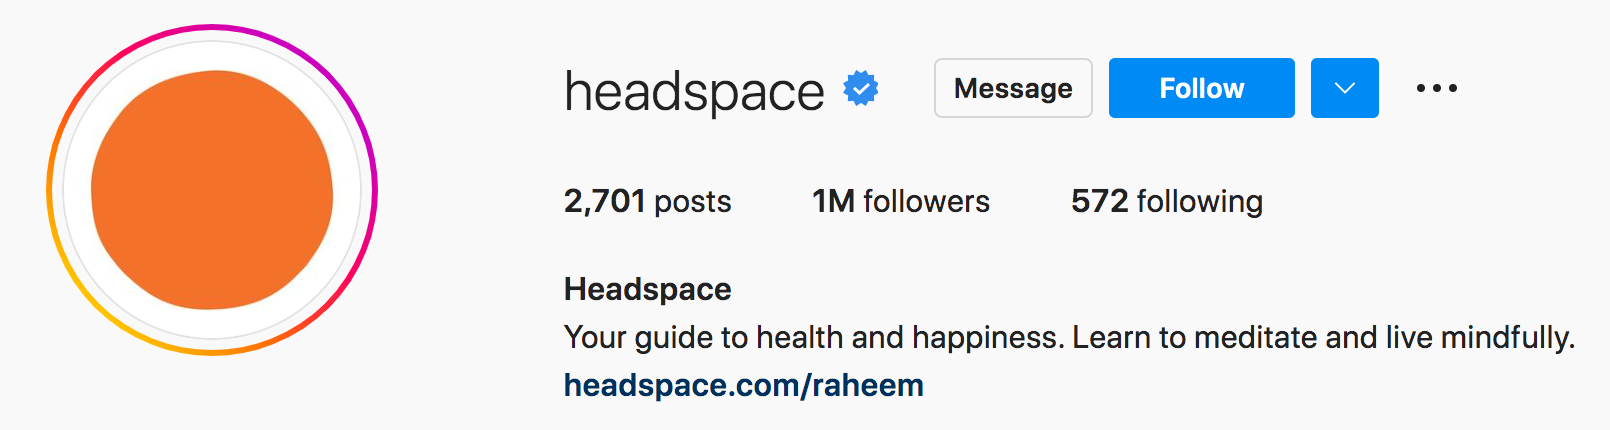 headspace instagram bio